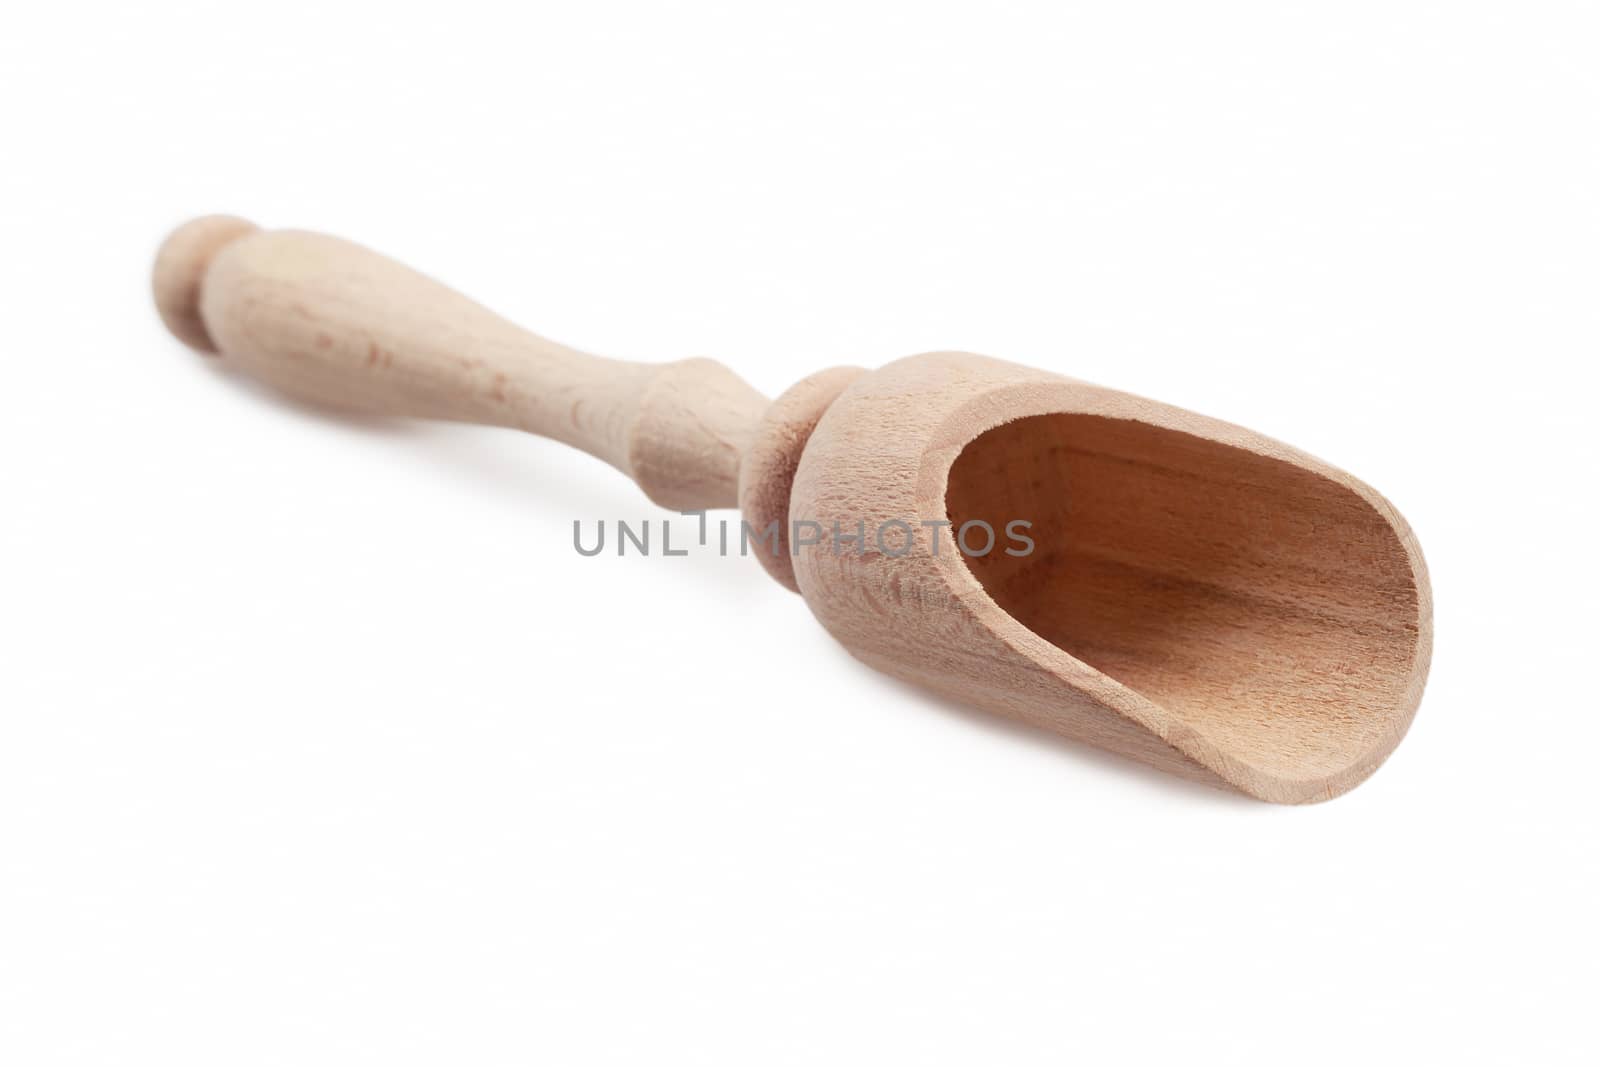 Wooden scoop by marynamyshkovska